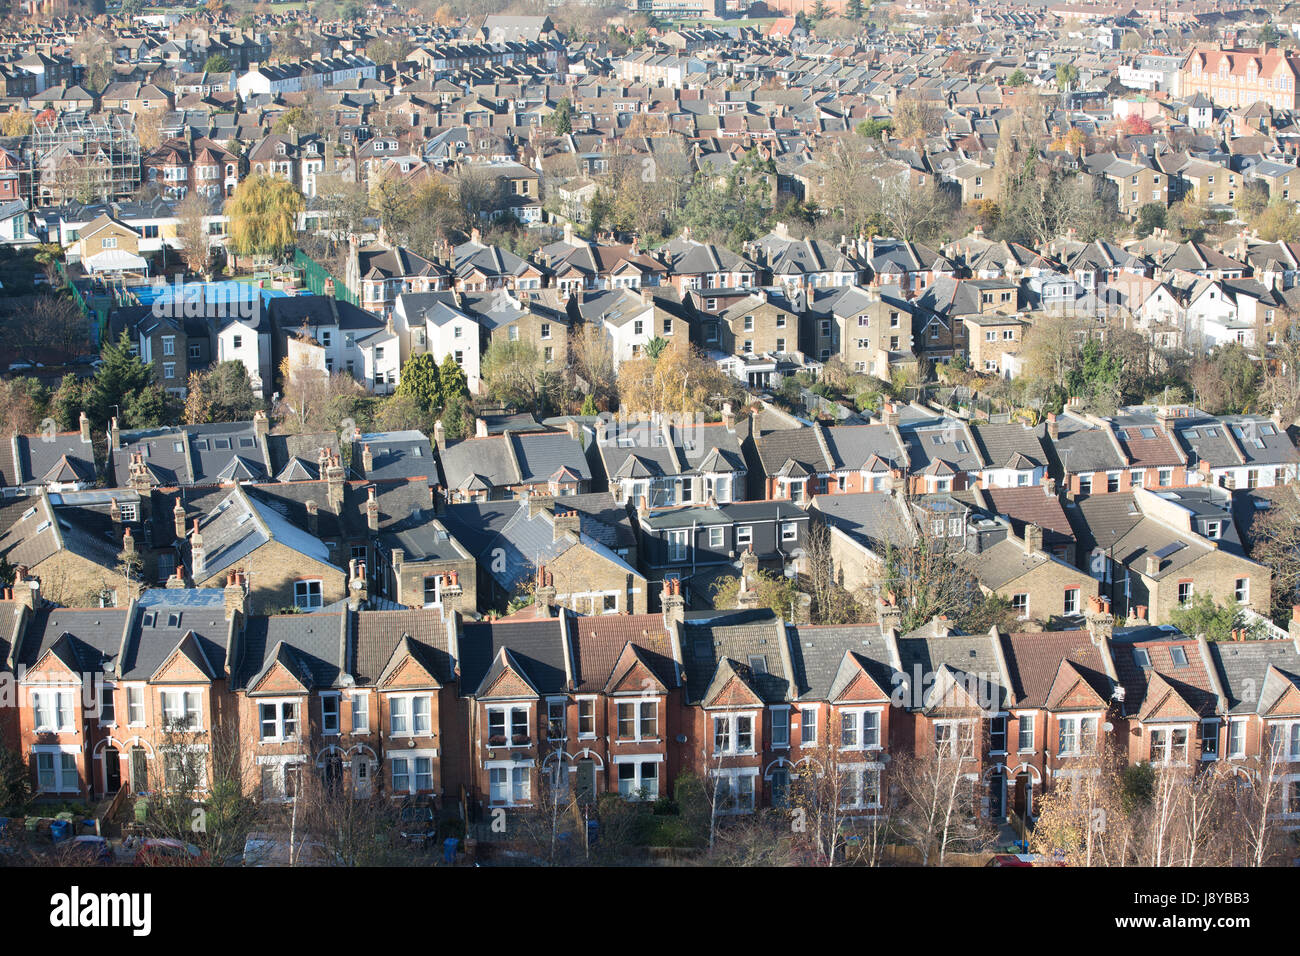 Une vue aérienne sur le sud de Londres à la recherche de logements en terrasses au nord Banque D'Images